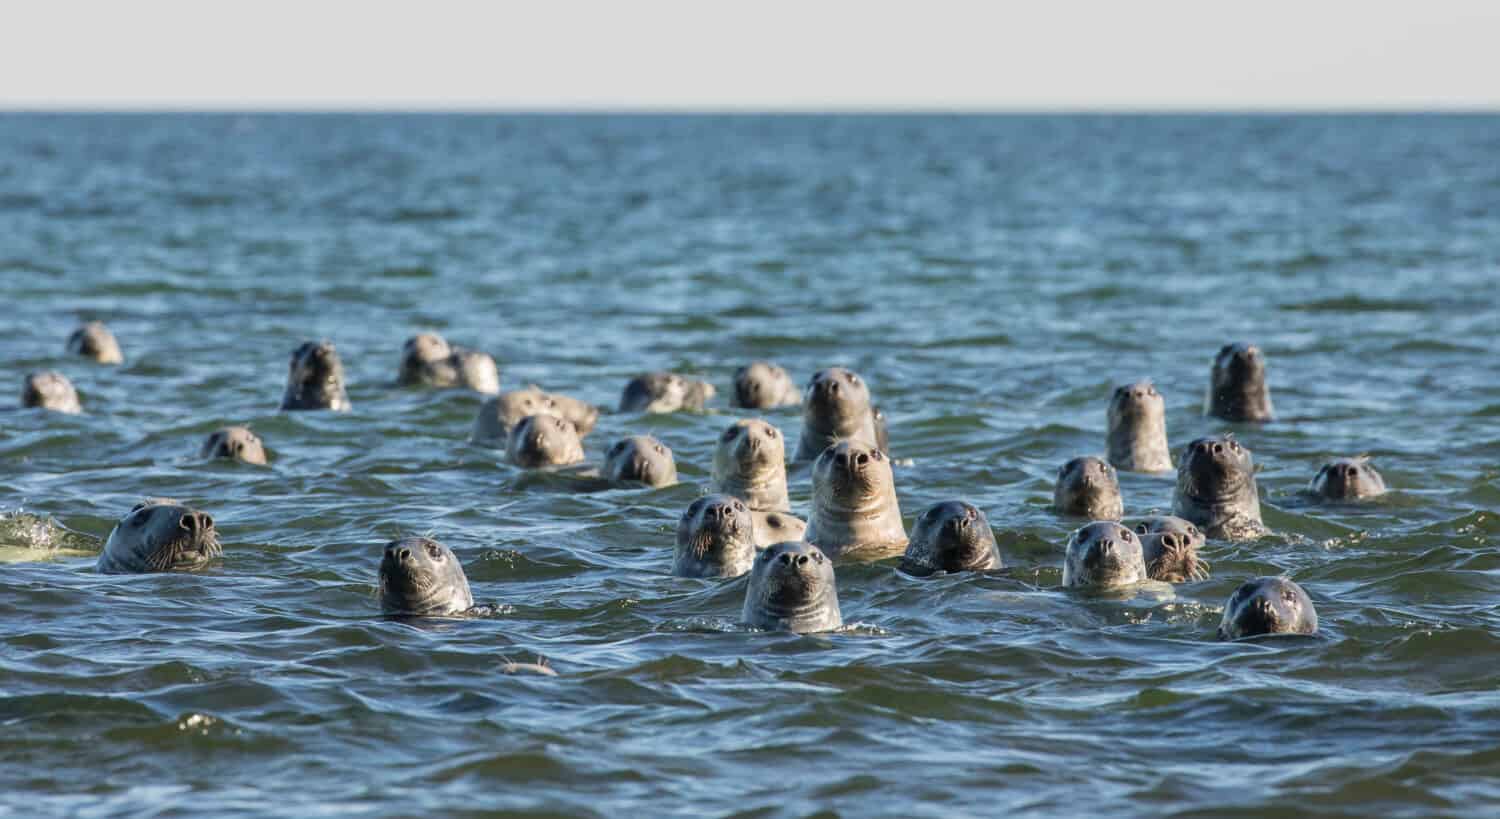 Gruppo di foche grigie che sbirciano dall'acqua e guardano con curiosità i visitatori